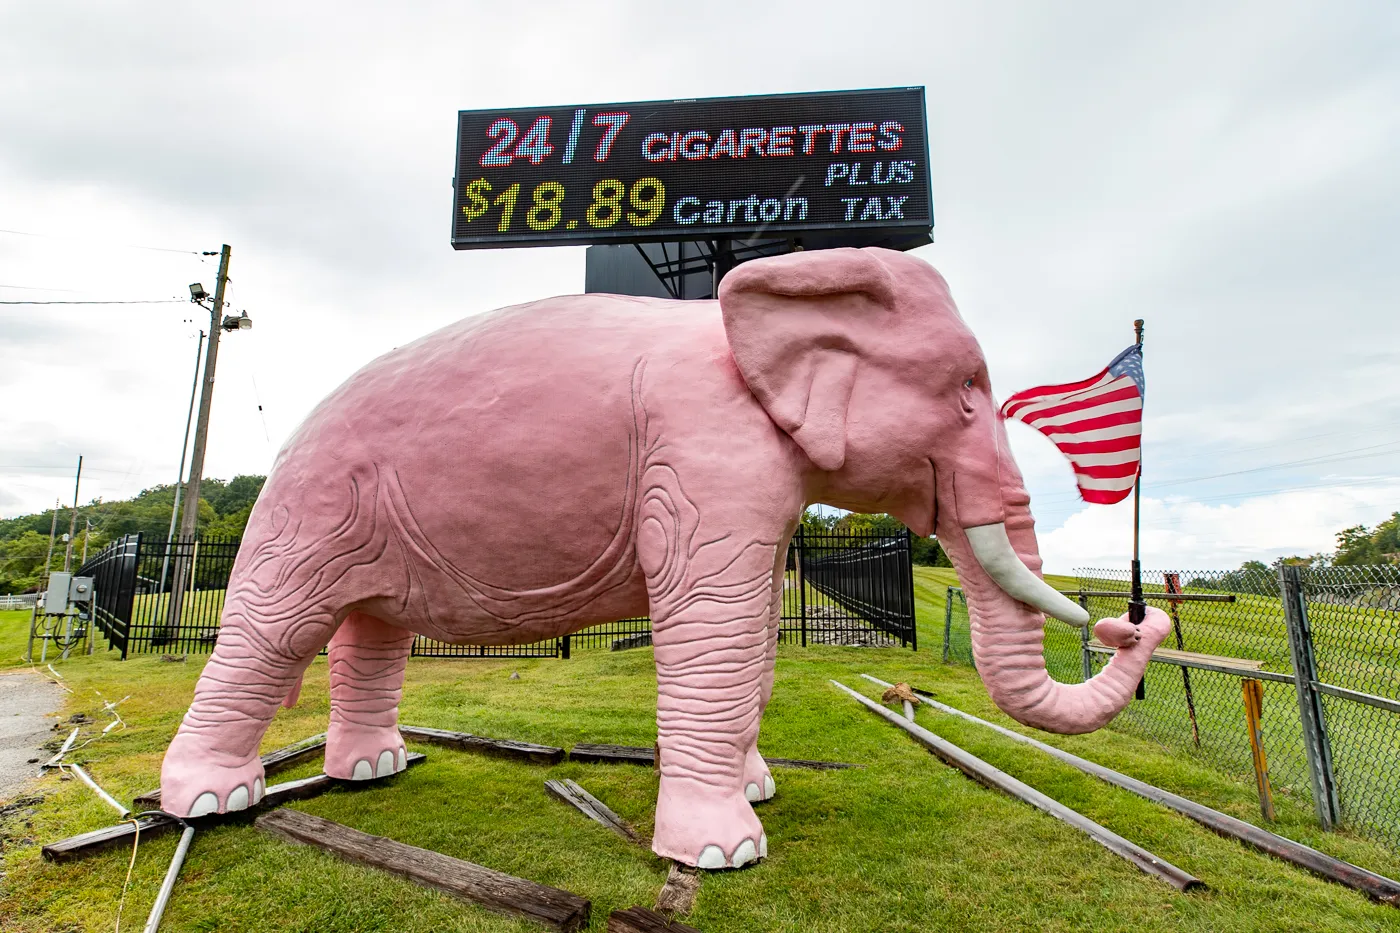 LargeLarge Pink Elephant in Fenton, Missouri roadside attraction Pink Elephant in Fenton, Missouri